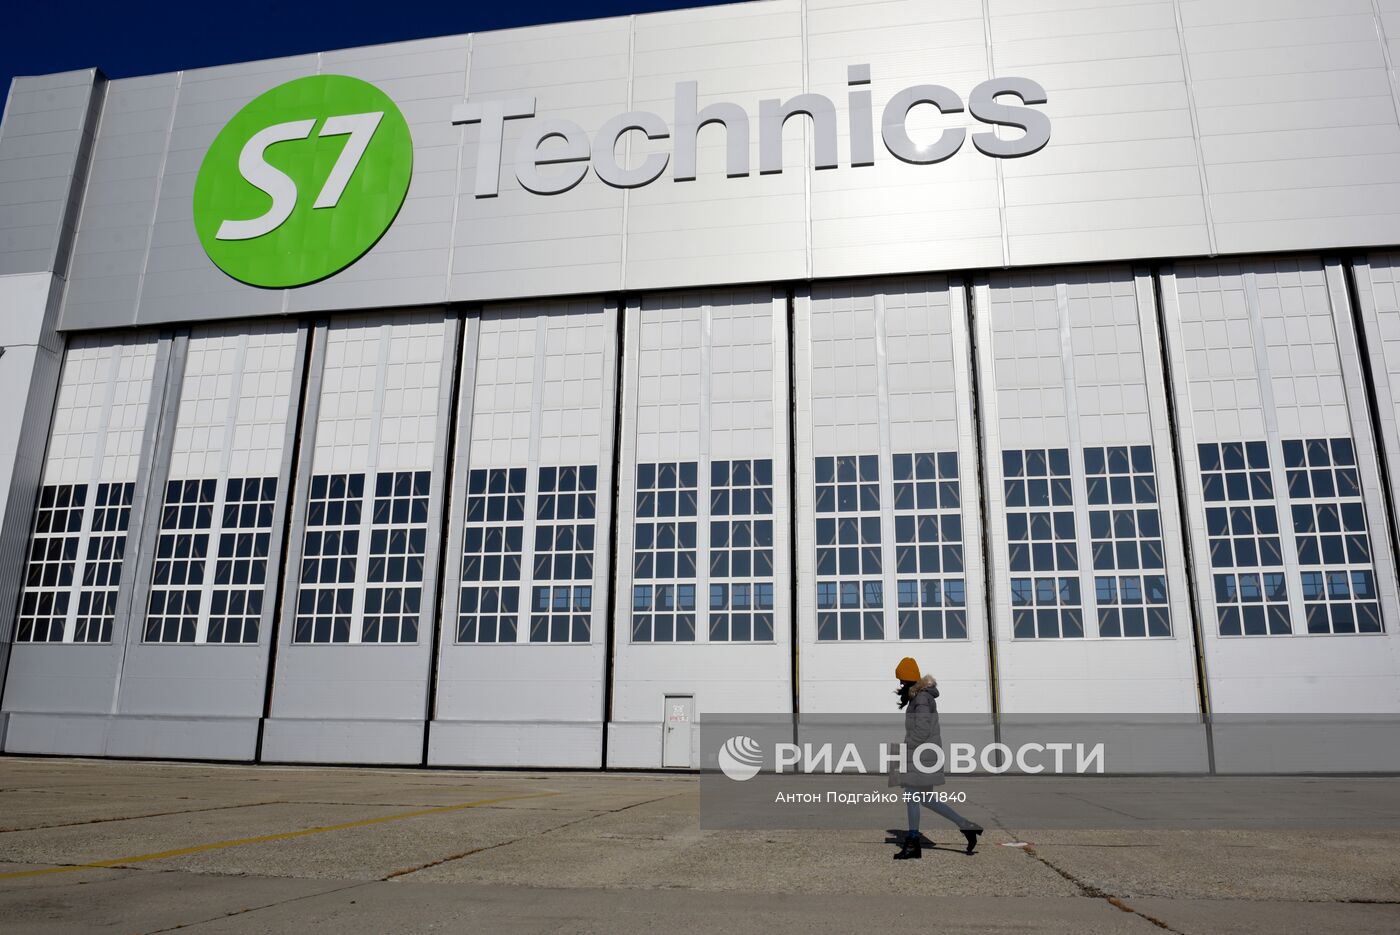 Авиаремонтный завод S7 Technics